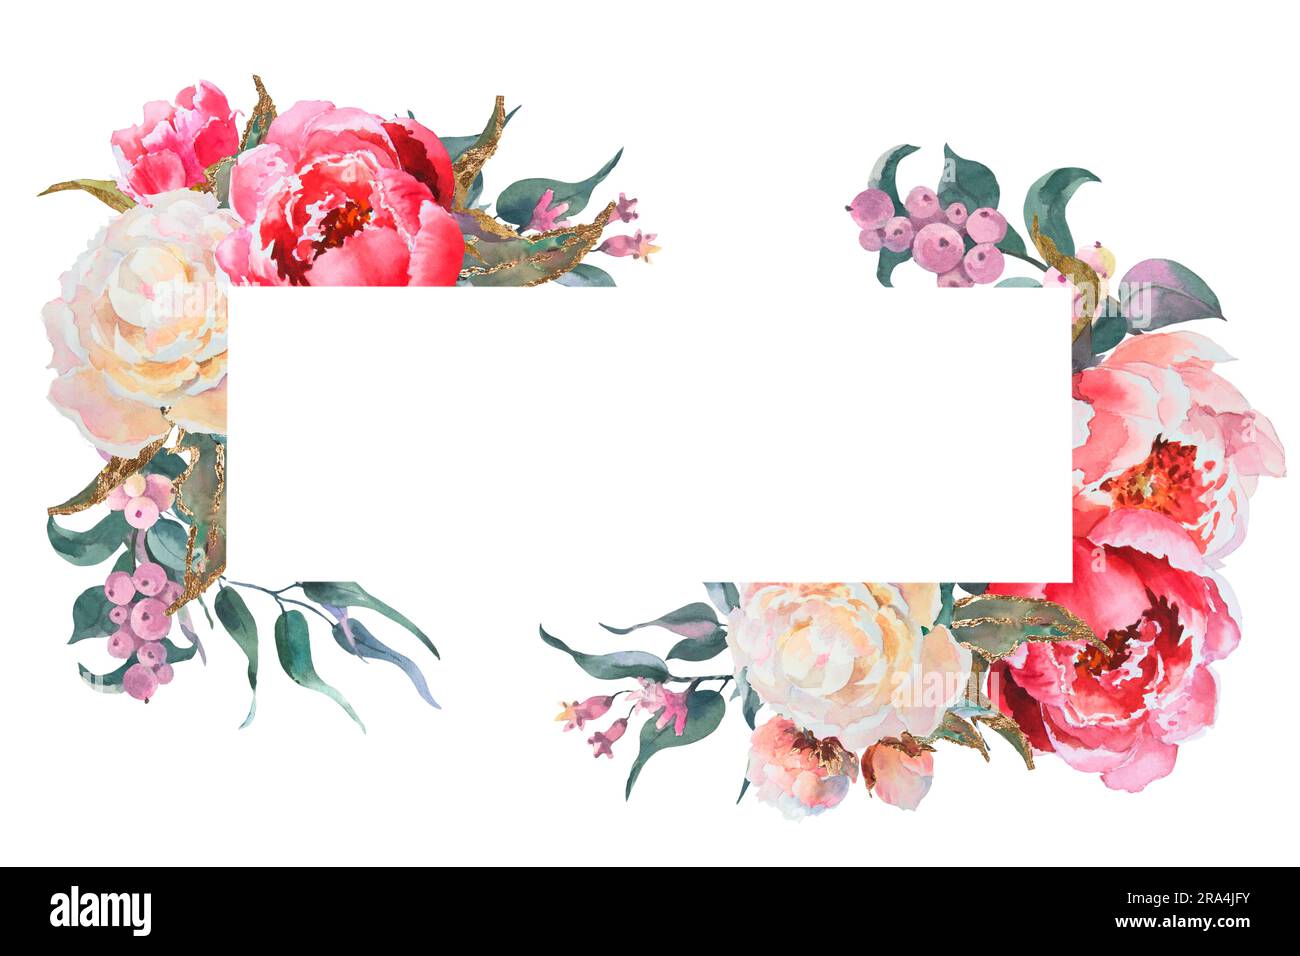 Cornice orizzontale ad acquerello, modello, peonie rosa e bianche, rami di eucalipto. Illustrazione botanica disegnata a mano isolata su sfondo bianco Foto Stock